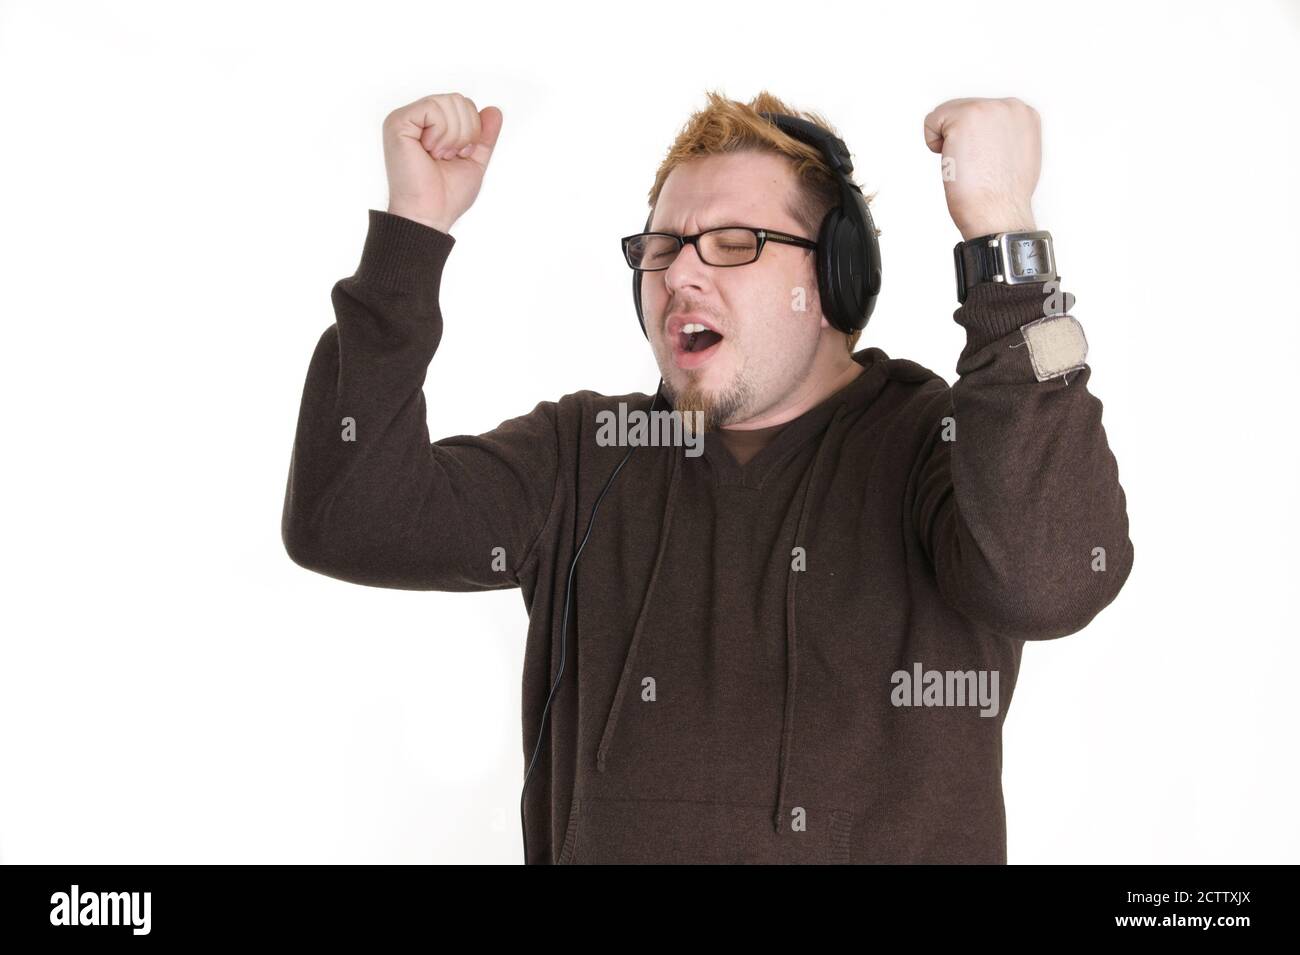 Mann mit Brille und braunem Sweatshirt Stockfoto